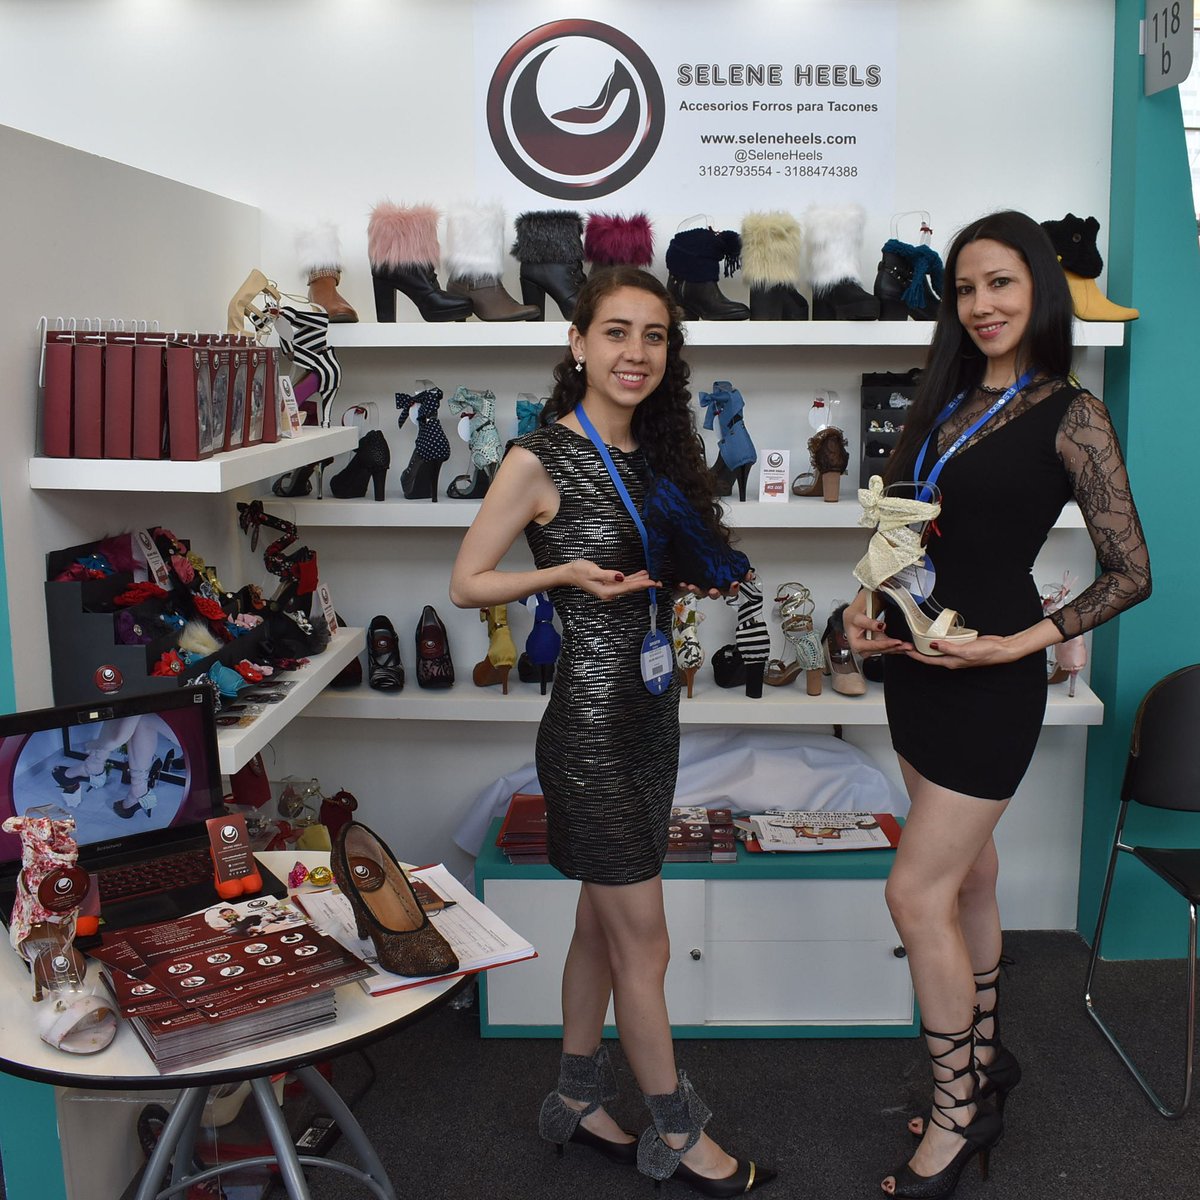 Hermanitas creadoras de Accesorios Forros para Tacones  #SeleneHeels en la feria #IFLS2019 #Corferias  #Mujerimpactante!! 👠👠

 #tacones #heels #moda #fashion #shoes #shoeoutfit #zapatos #estilo #madeincolombia #semanadelamoda #calzado #footwear #feriadelcalzado